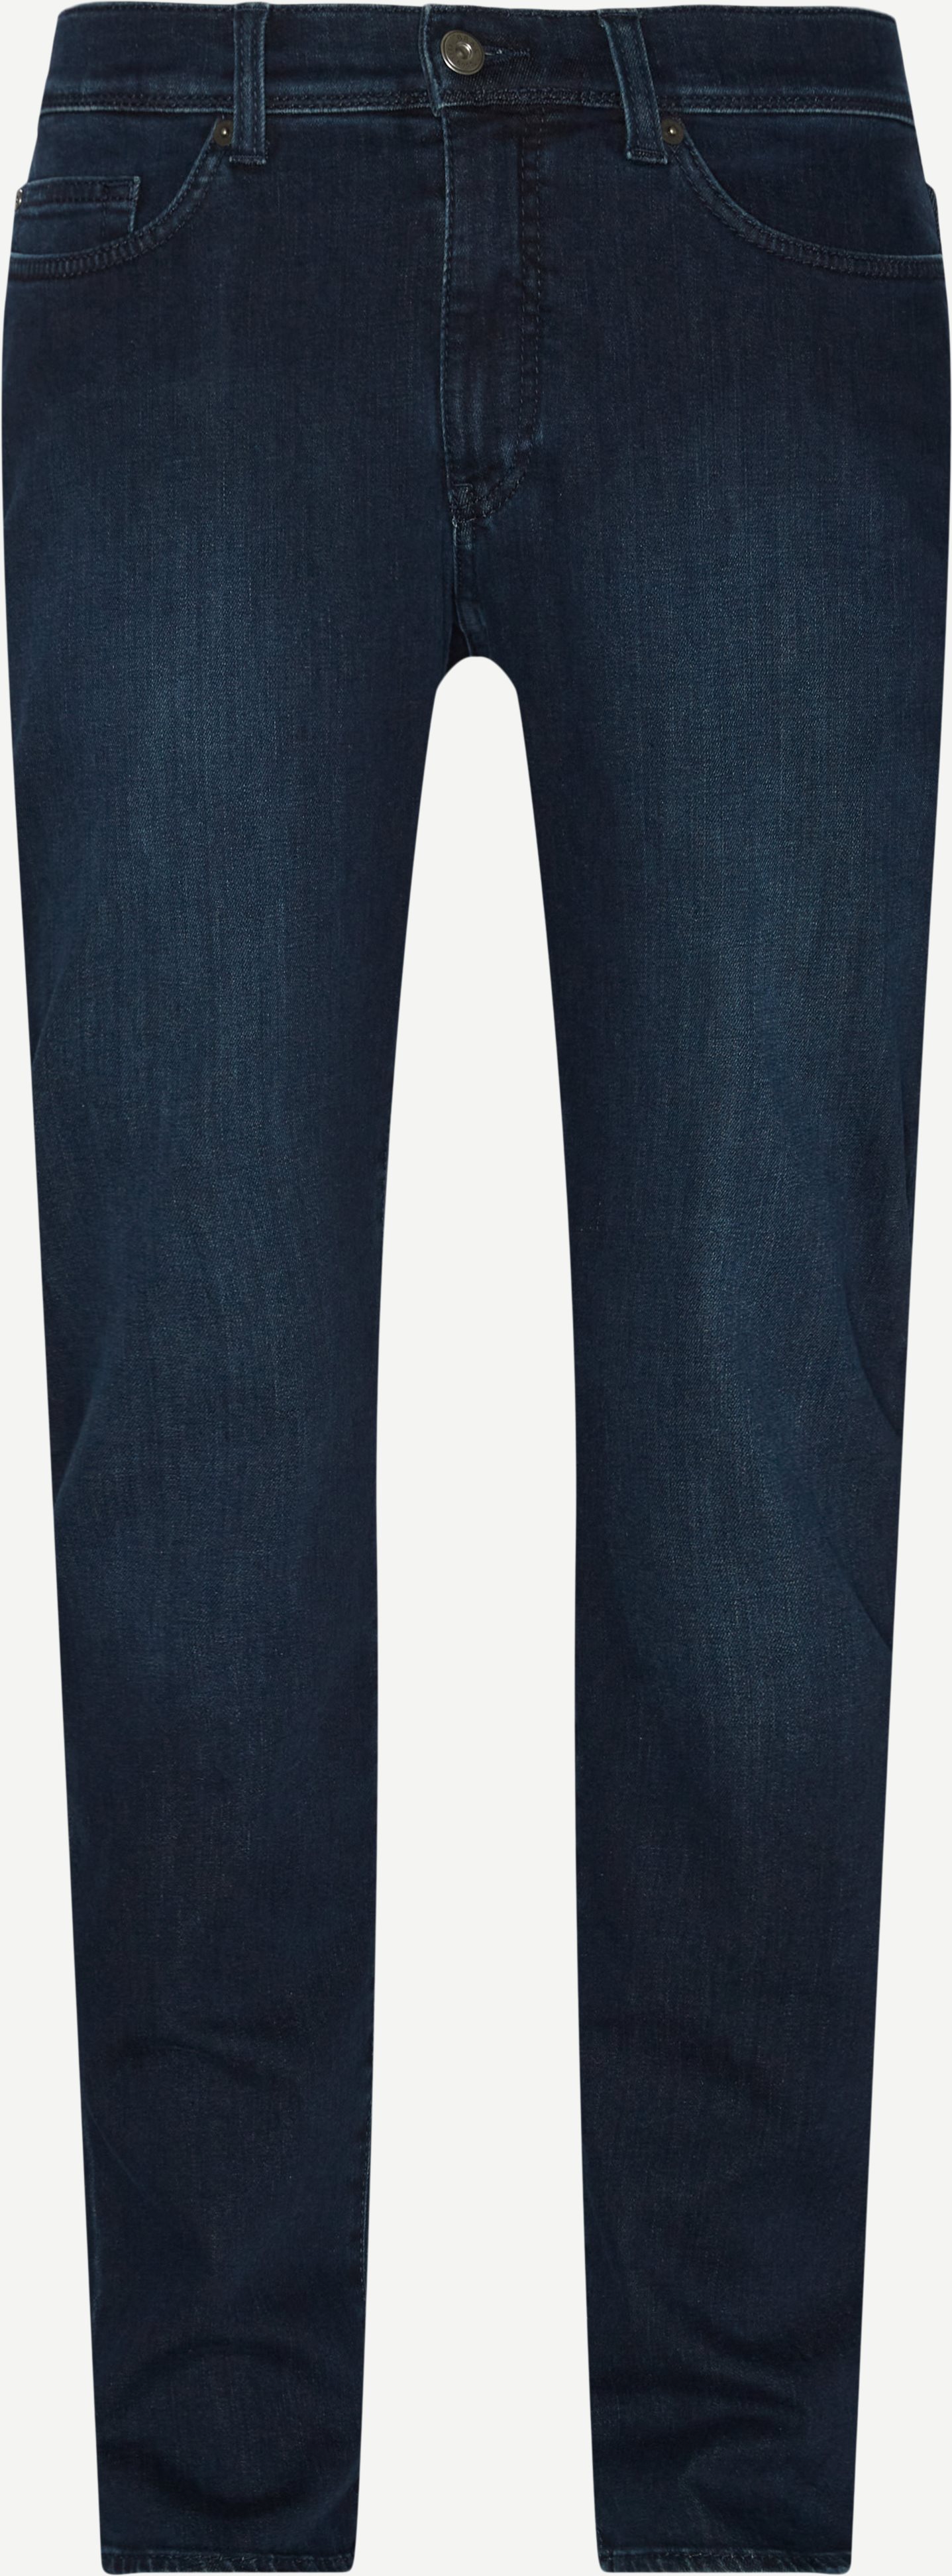 6054 Cadiz Blue Planet Jeans - Jeans - Straight fit - Denim